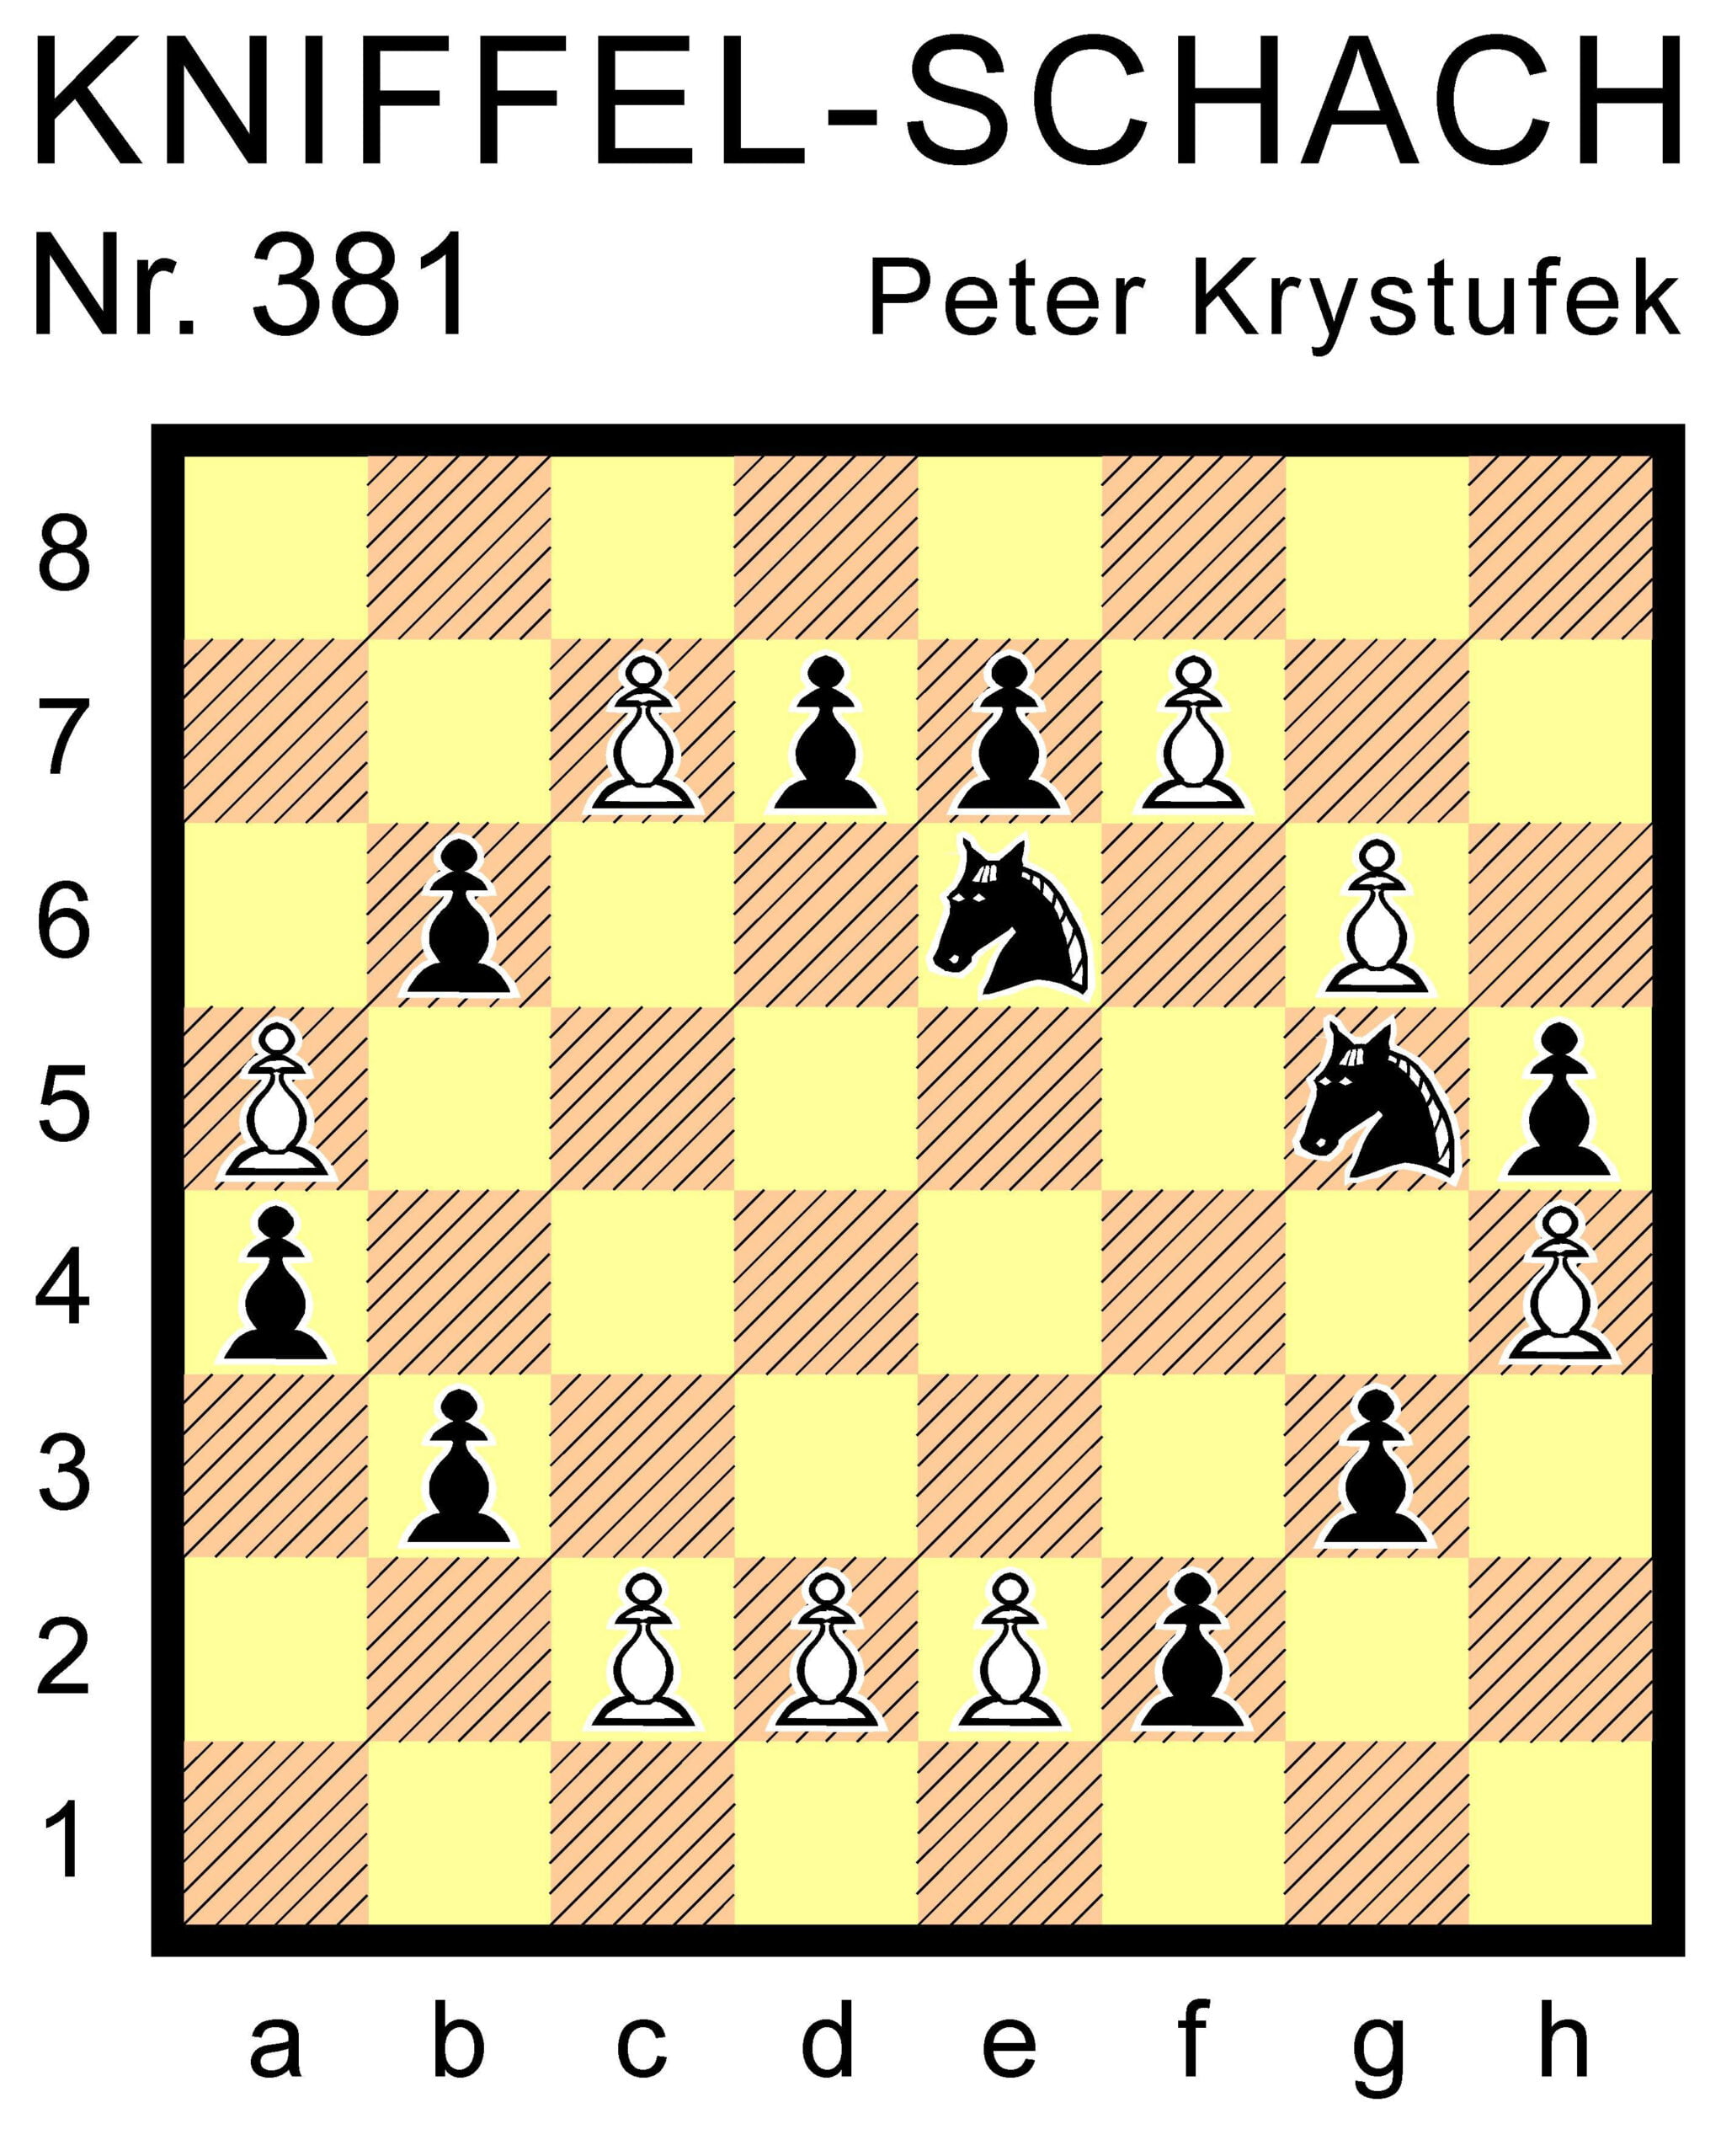 Kniffel-Schach Nr. 381